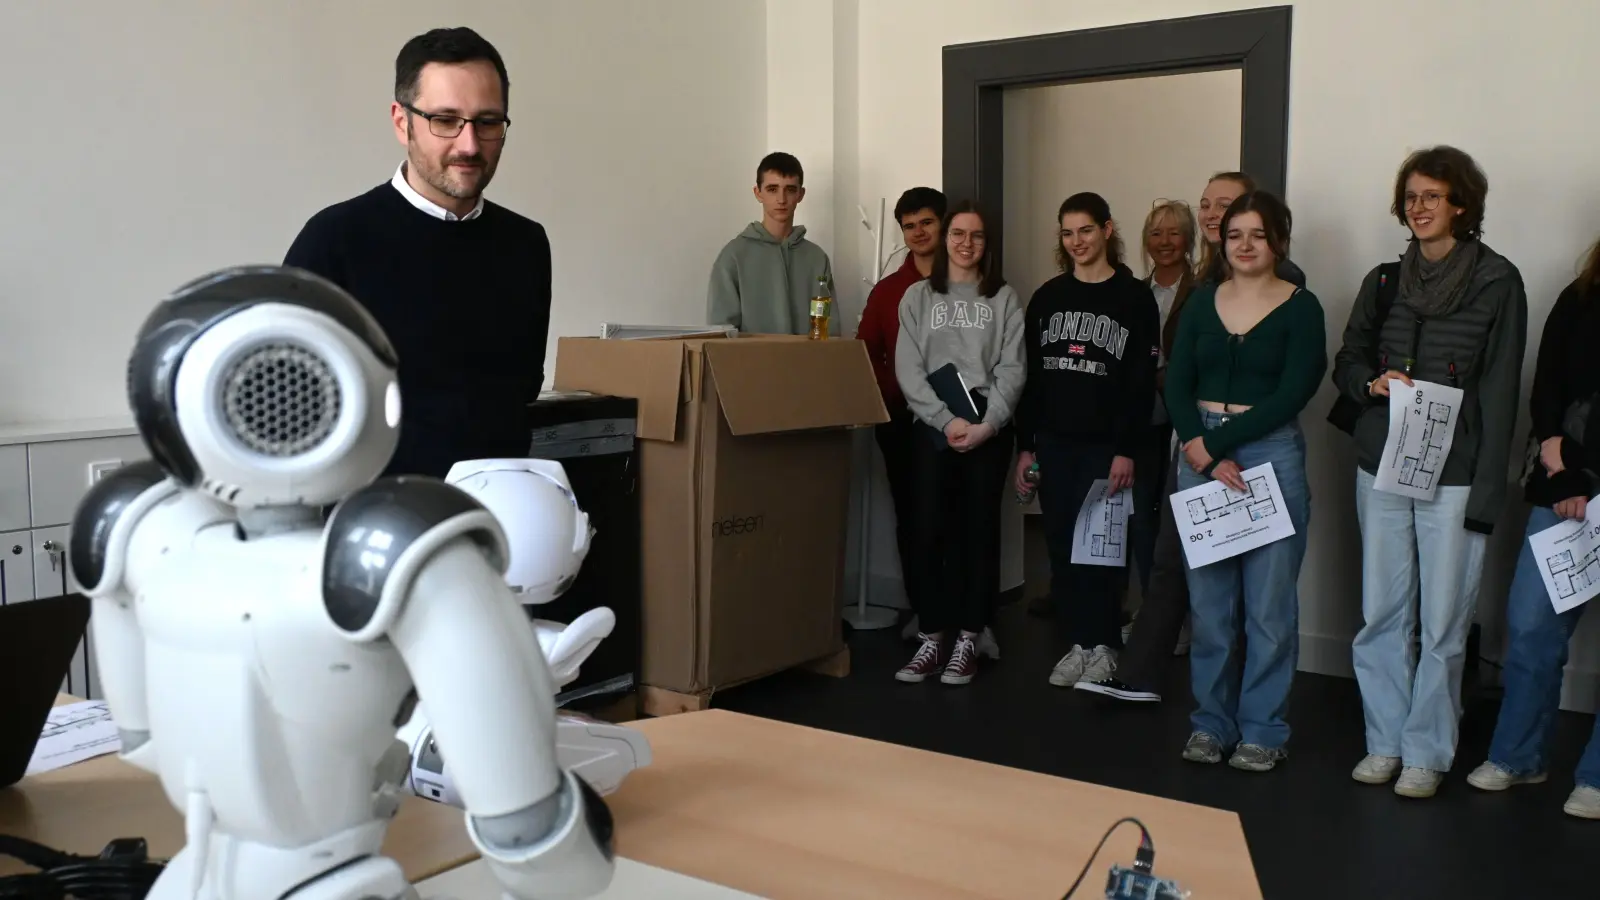 Professor Dr. Alexander Piazza zeigte den Jugendlichen, wofür die Roboter des Campus verwendet werden und wie sie funktionieren. (Foto: Luca Paul)